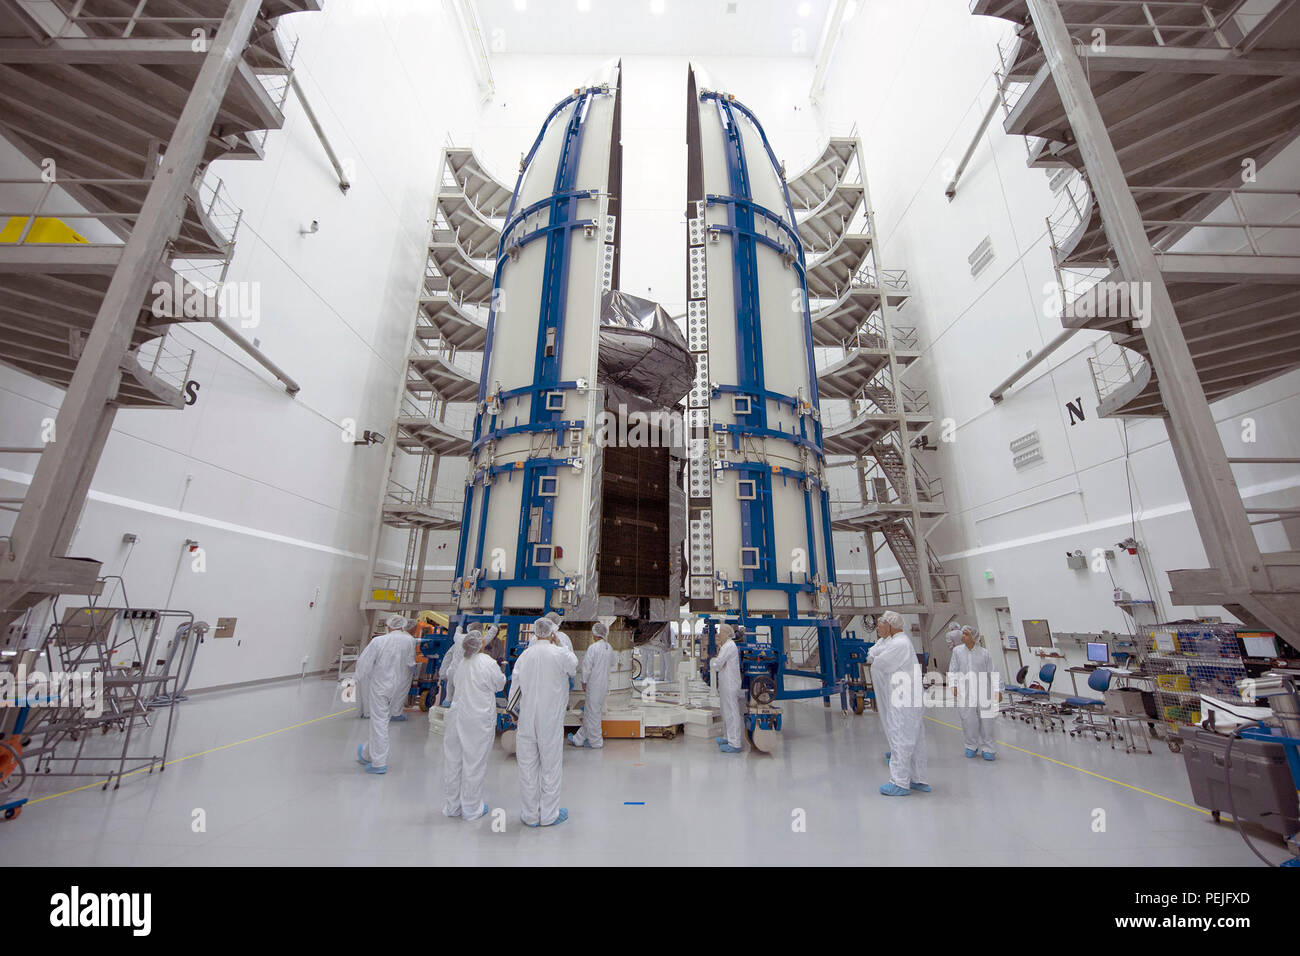 1508010-N-ZZ999-001 Cape Canaveral, Fla. (Agosto 10, 2015), Stati Uniti La marina del quarto Utente Mobile sistema oggettivo (MUOS-4) via satellite è incapsulato all'interno di un 5 metri di carenatura per il payload in preparazione per il lancio di un Atlas V rocket. Il lancio è previsto per il mese di agosto 31, 2015. MUOS è la nuova generazione di banda stretta tactical sistema di comunicazioni di satellite progettato per migliorare significativamente al di fuori-linea-di-vista le comunicazioni per le forze americane in movimento. (U.S. Navy Photo courtesy of United Launch Alliance/rilasciato) Foto Stock